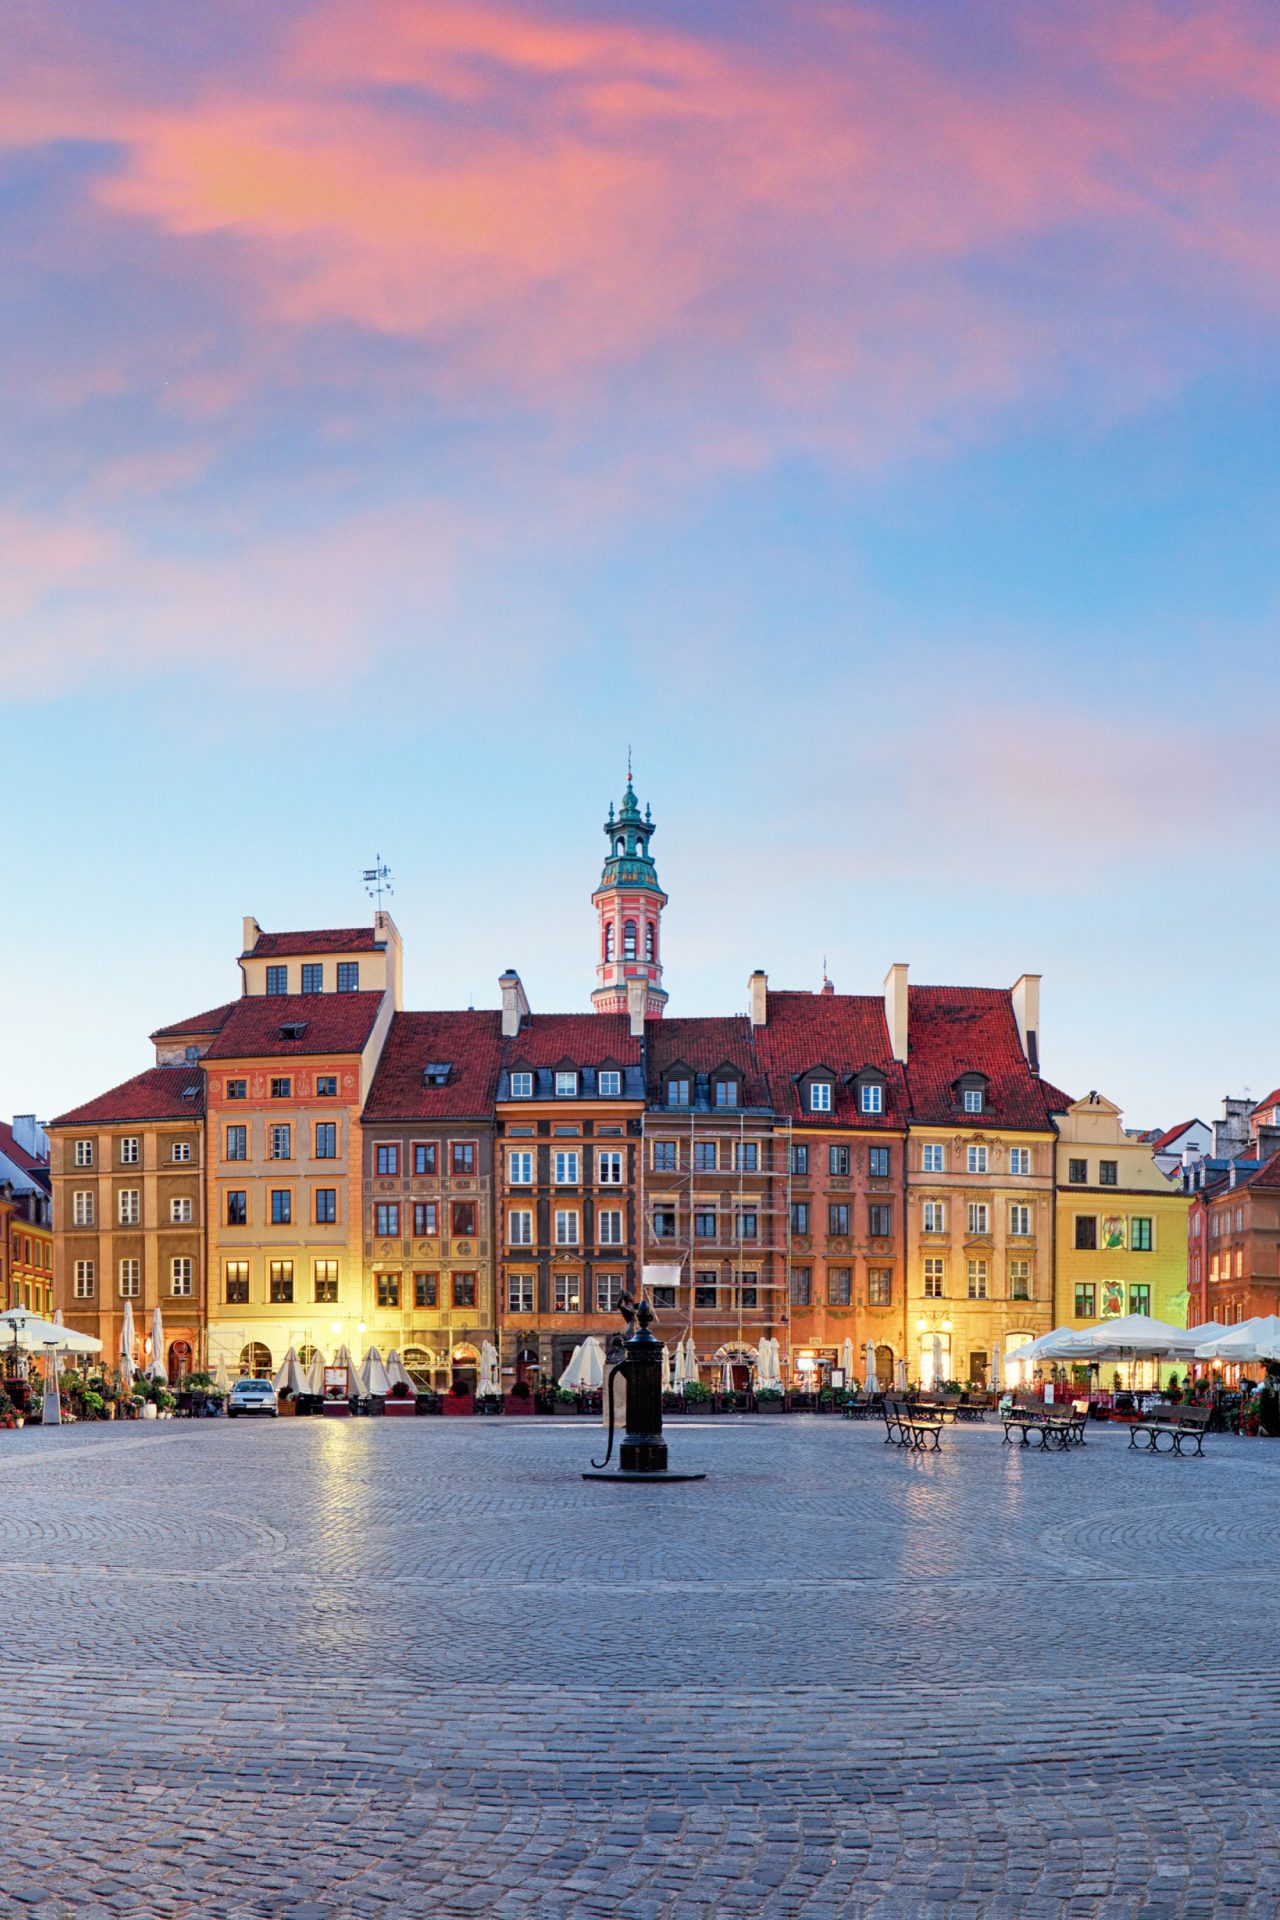 Warschau – Die Hauptstadt der Kontraste